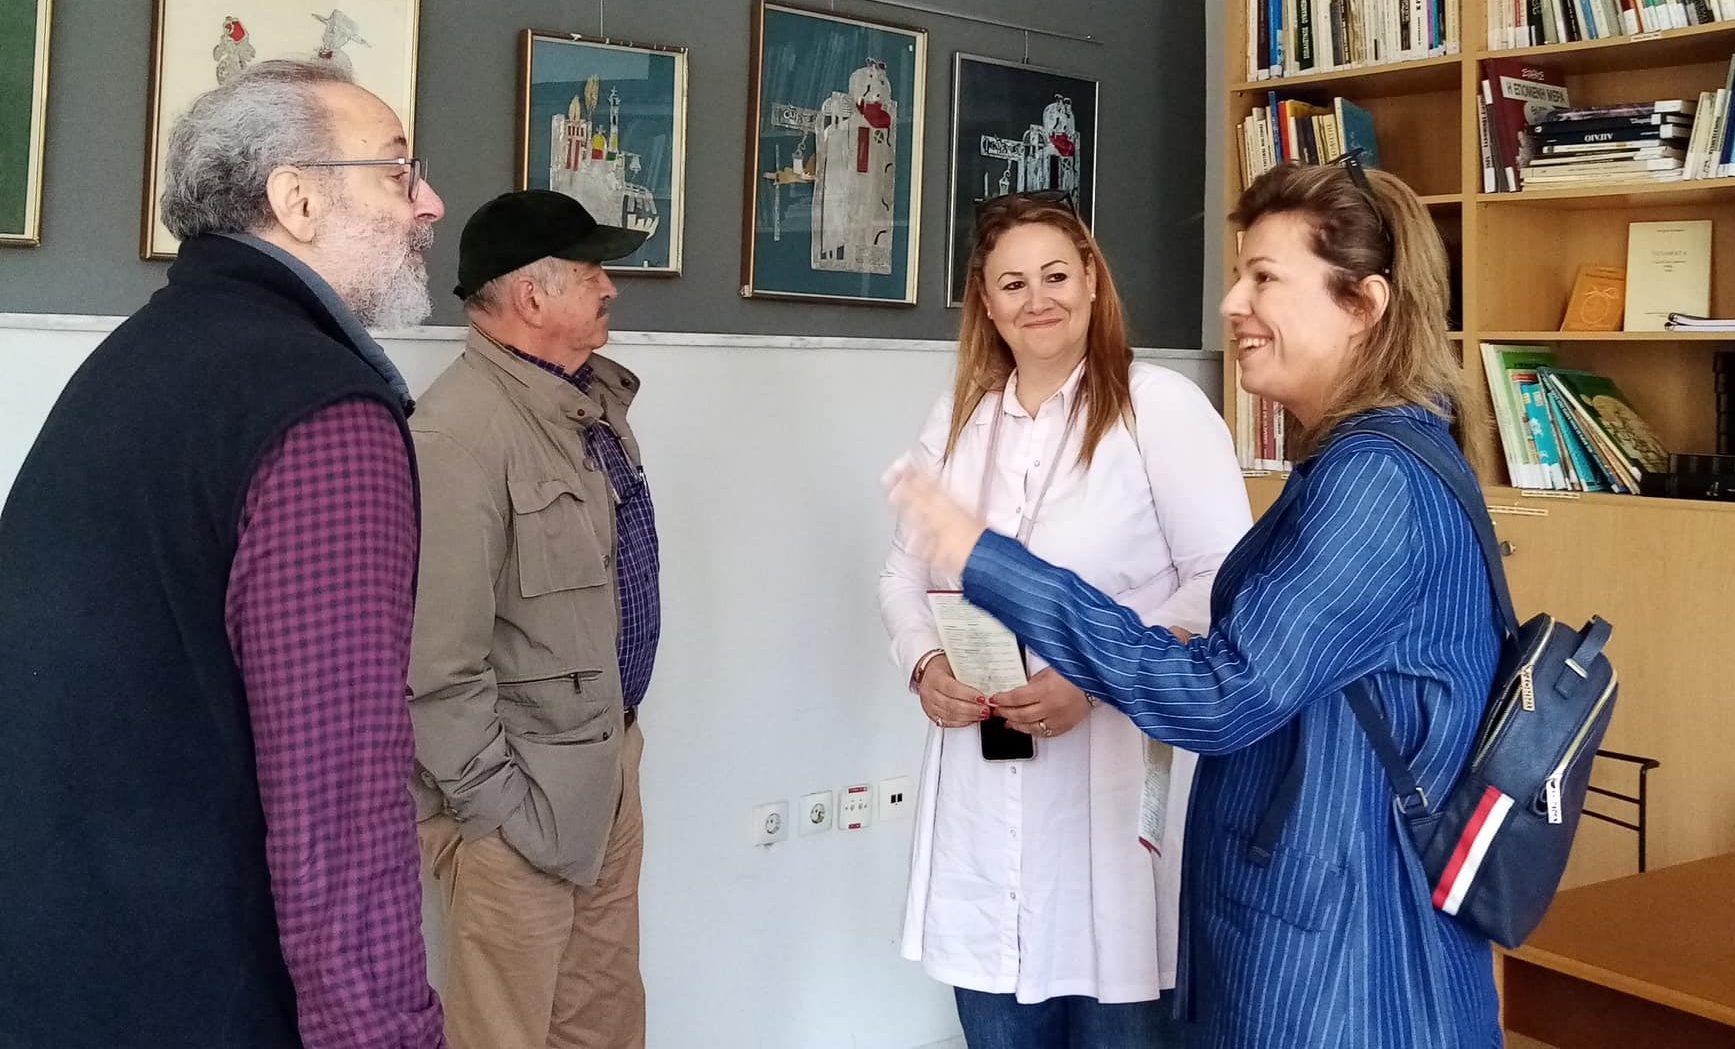 Εύβοια: Στο Μουσείο Γιάννη Σκαρίμπα – Τι δεσμεύτηκε η υπ. δήμαρχος Χαλκιδέων